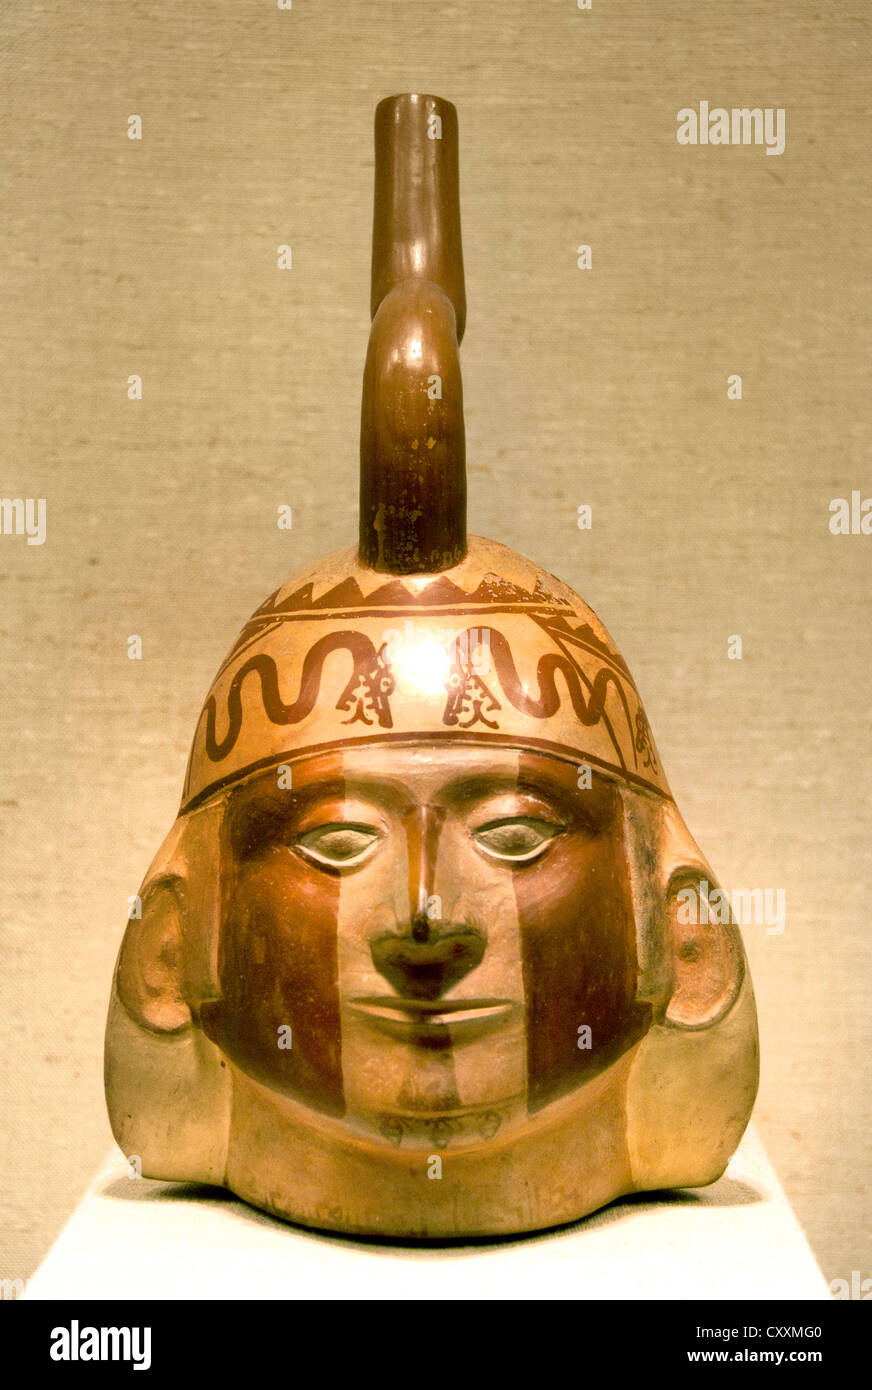 Botella de cabeza vertical de 5ª siglo 6 Perú Perú Cerámica Moche 32cm Foto de stock